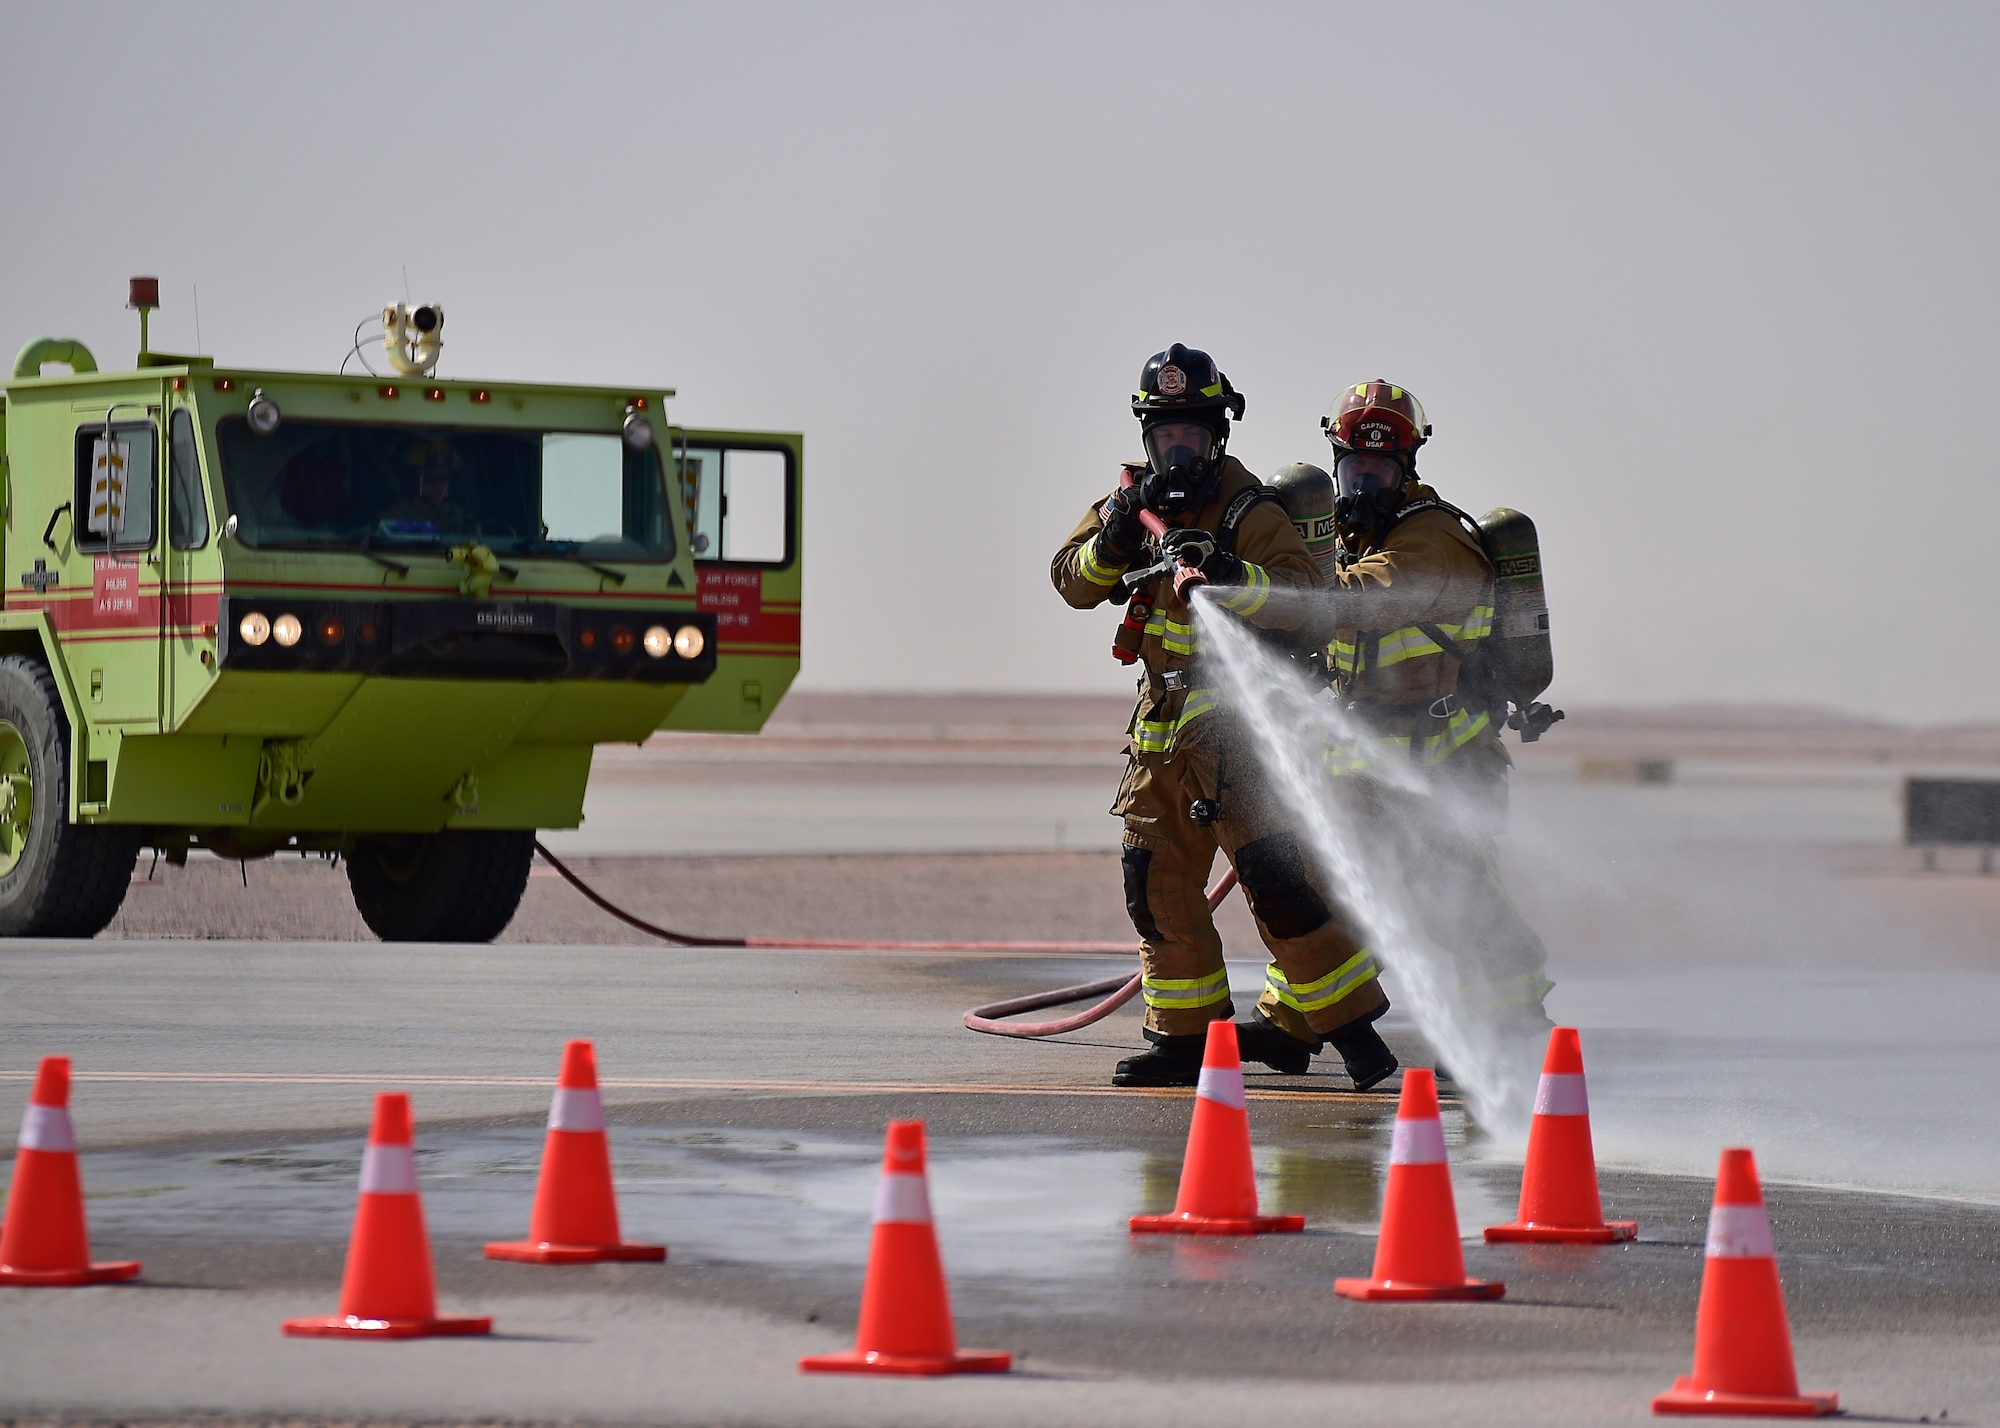 378 ECES fire department improve skills through training